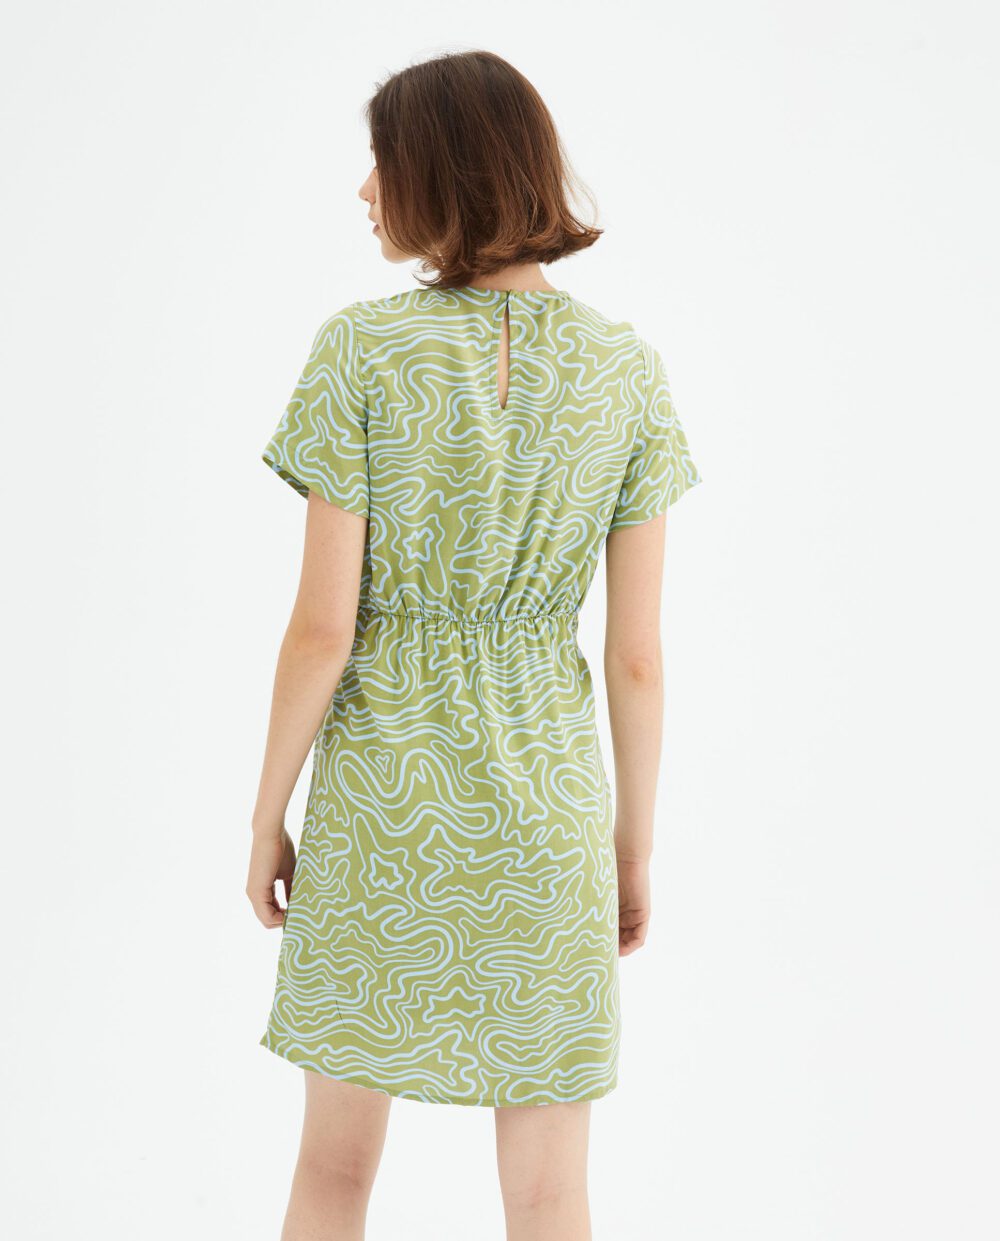 Mini Φόρεμα Με Print Κύματα Compania Fantastica